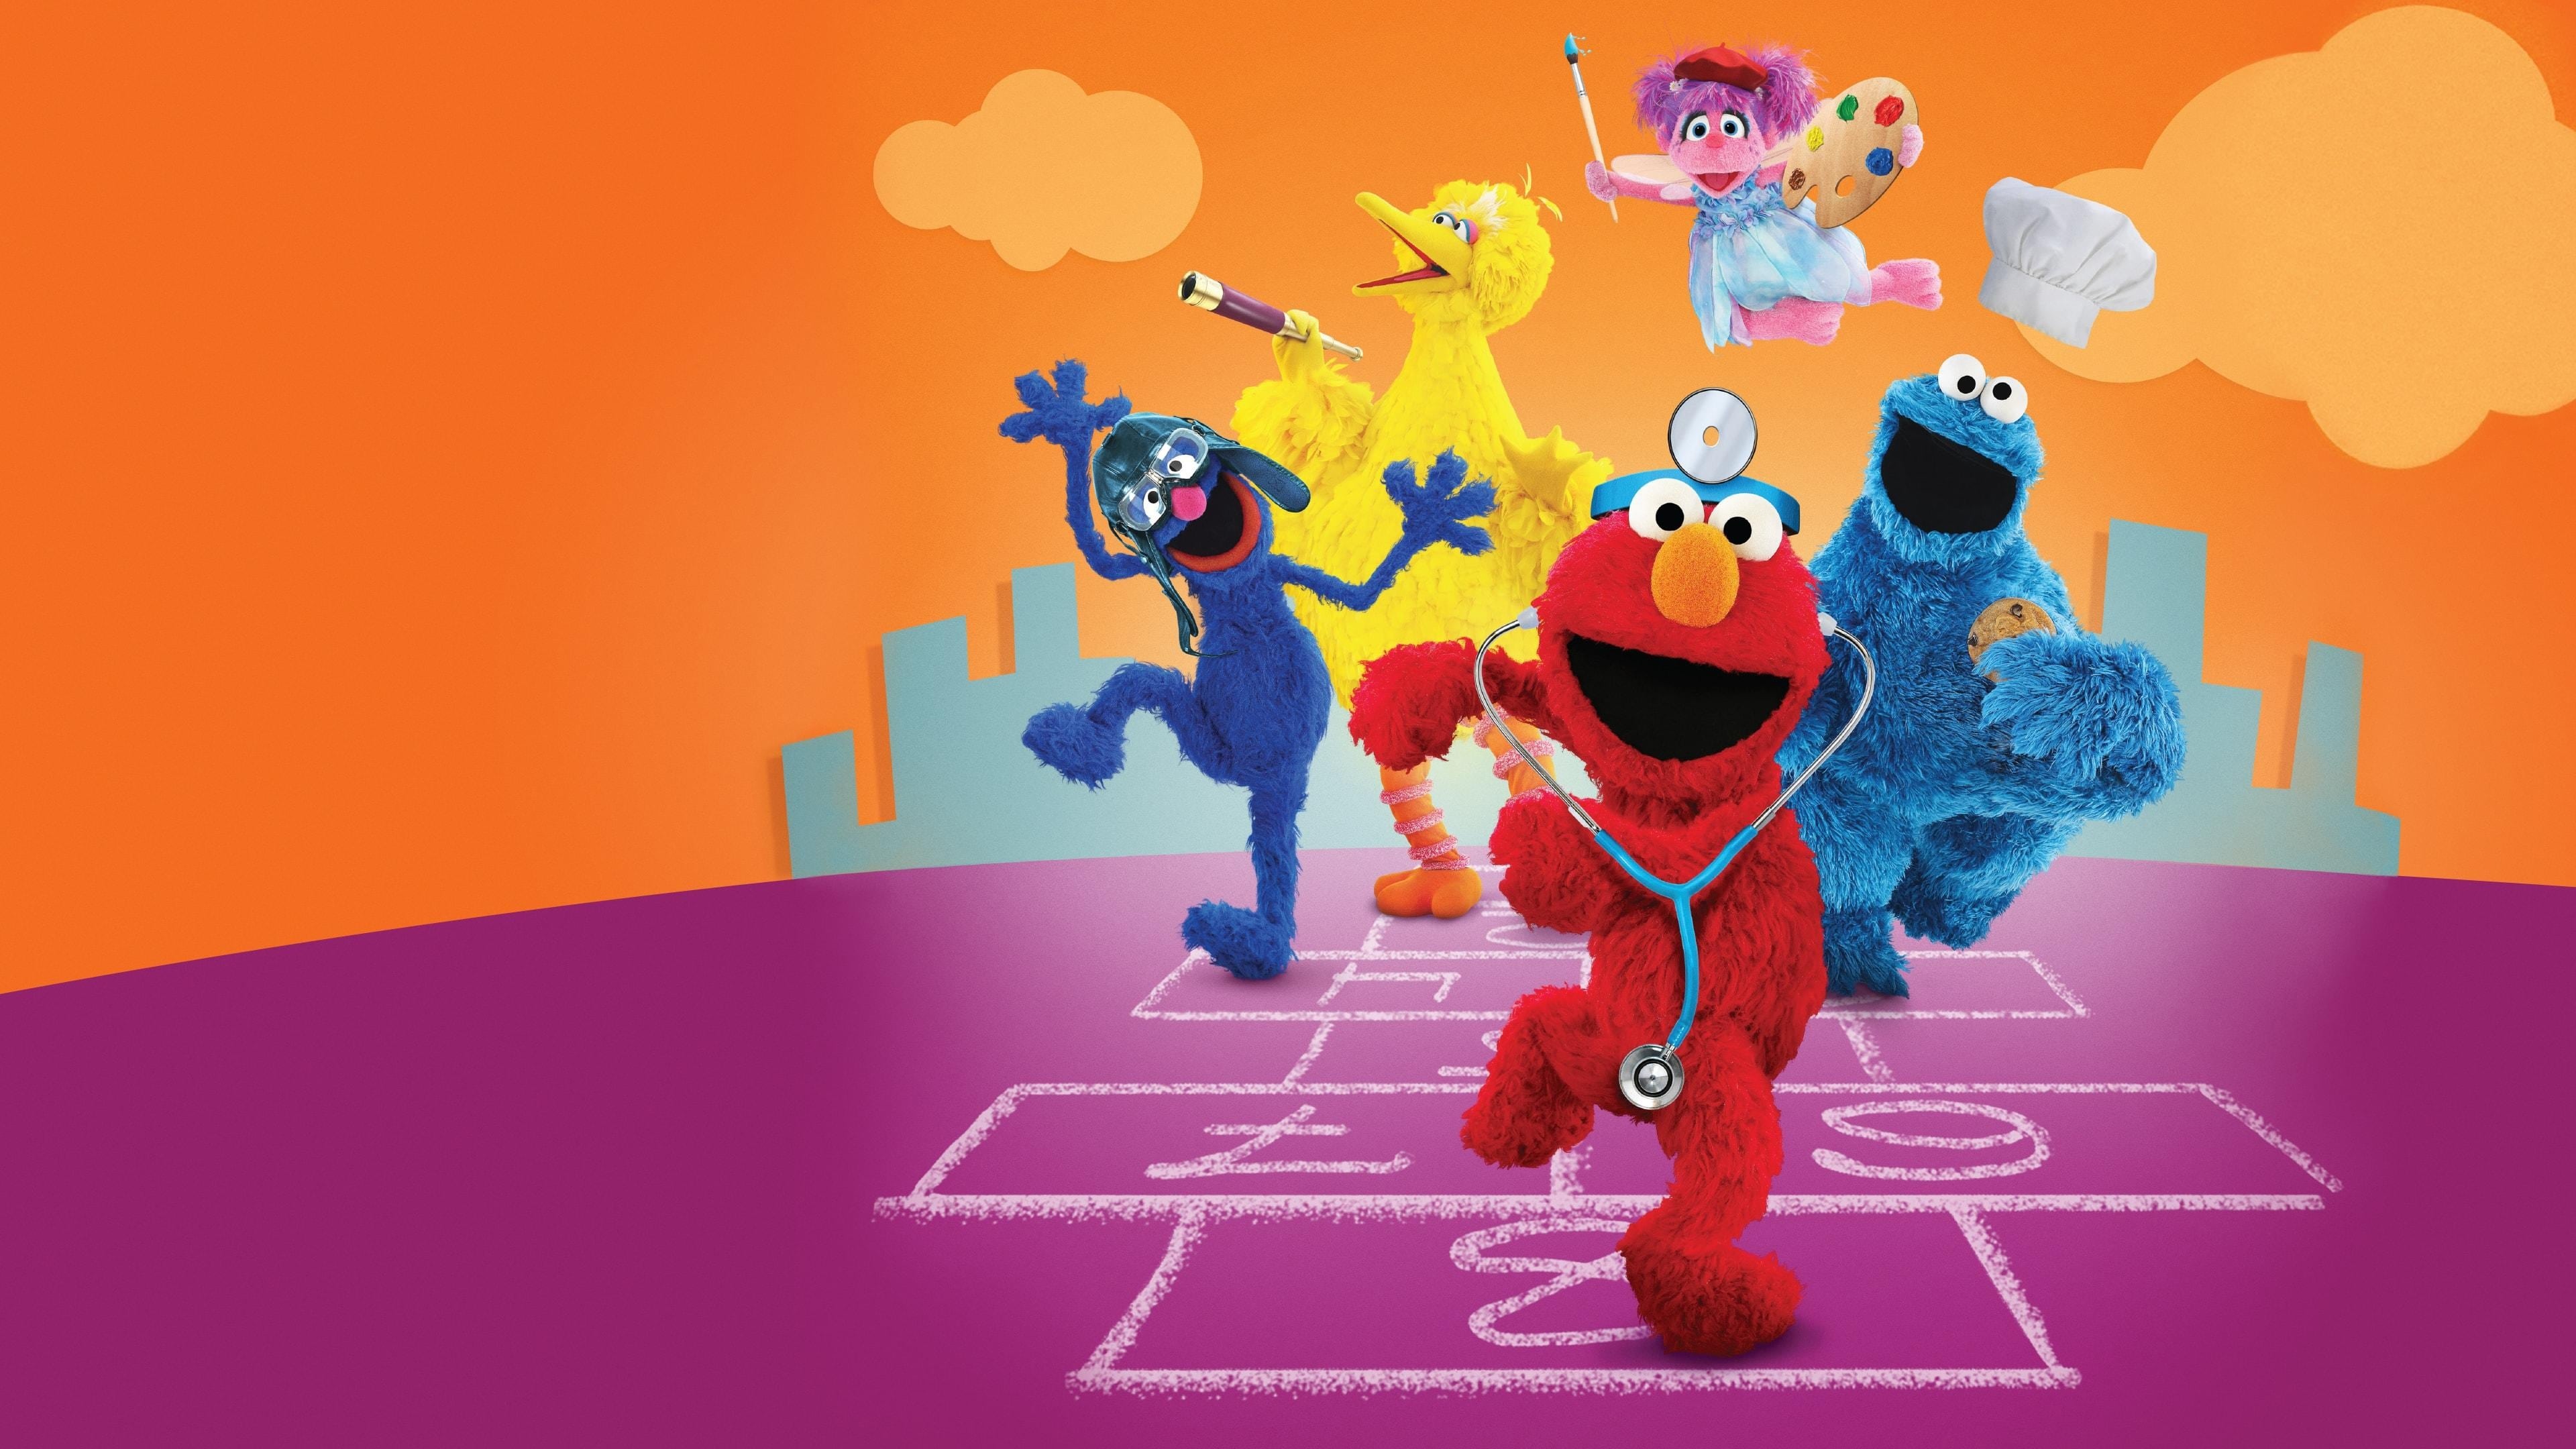 Sesame Street: Abby Cadabby, Elmo, Big Bird, Cookie Monster, Muppets. 3840x2160 4K Wallpaper.